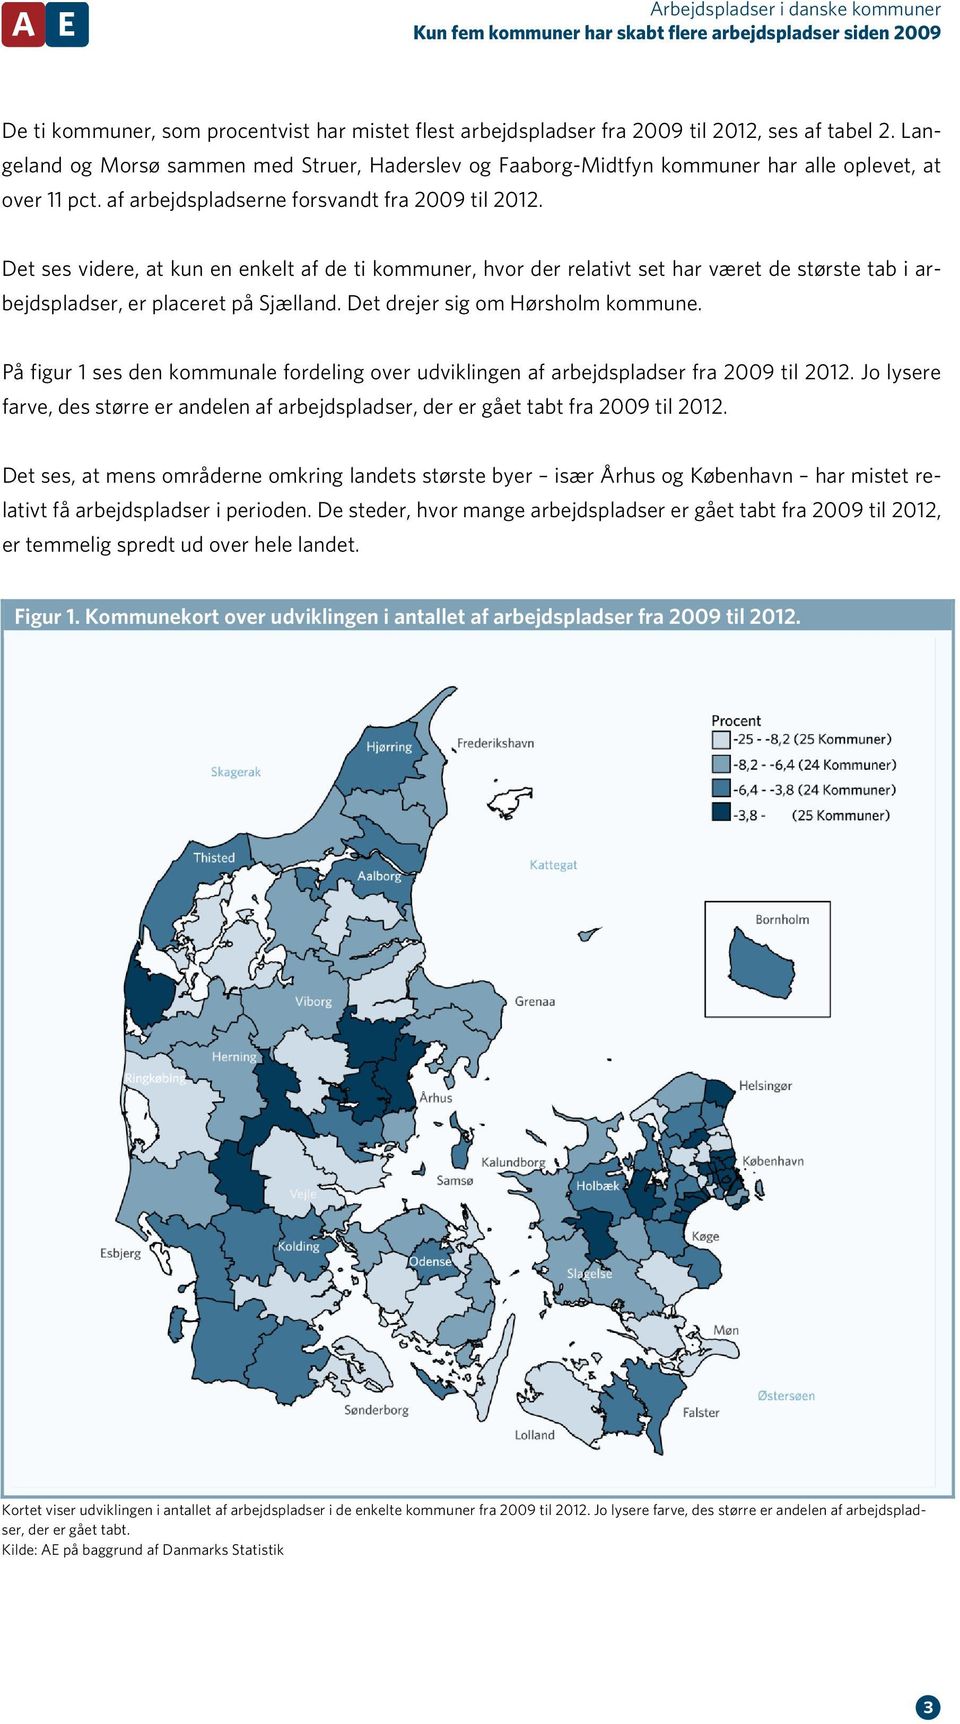 Det ses videre, at kun en enkelt af de ti kommuner, hvor der relativt set har været de største tab i arbejdspladser, er placeret på Sjælland. Det drejer sig om Hørsholm kommune.